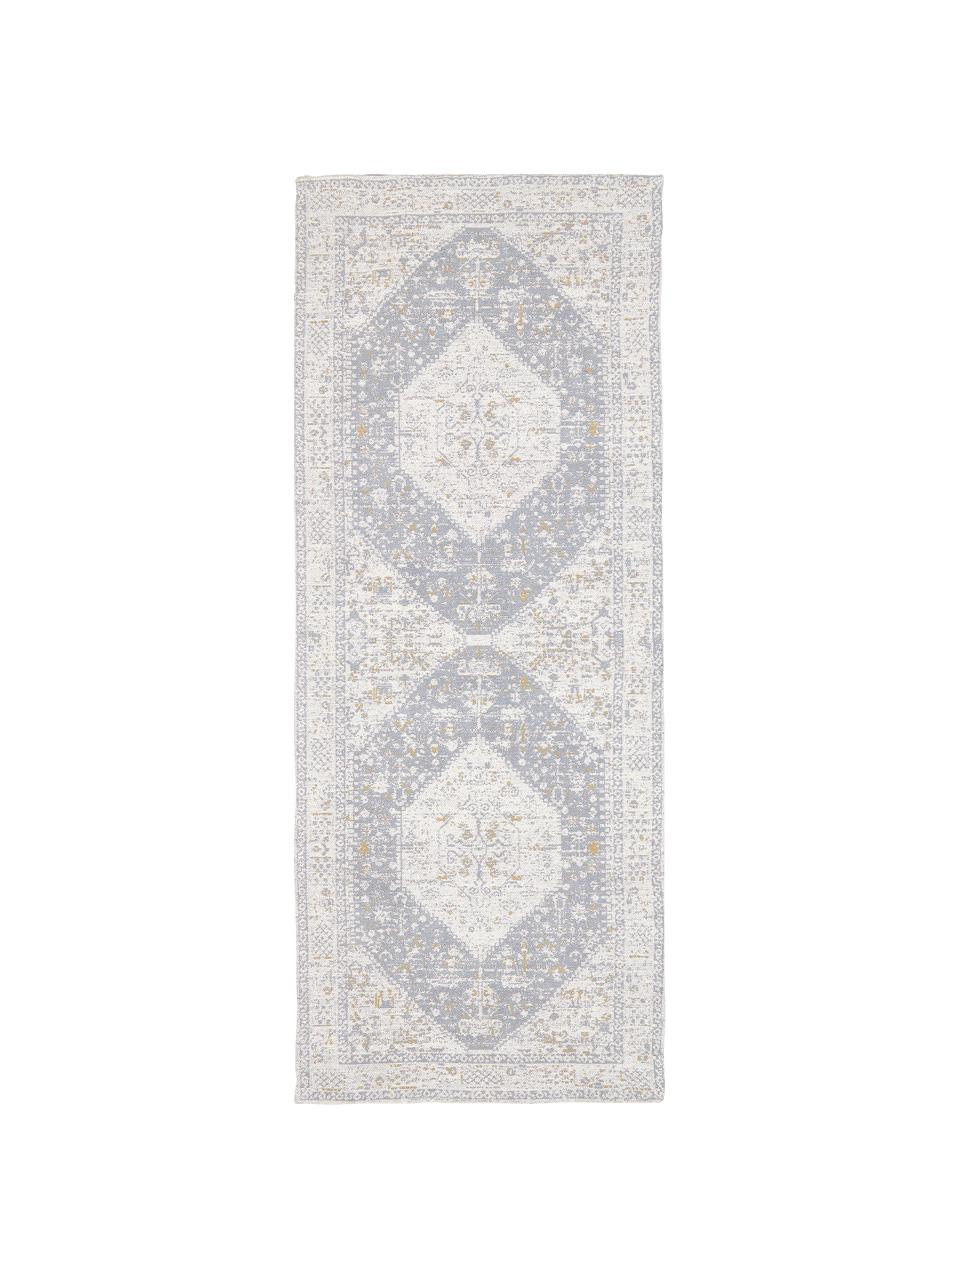 Ręcznie tkany chodnik  szenilowy Neapel, Szaroniebieski, kremowobiały, taupe, S 80 x D 300 cm